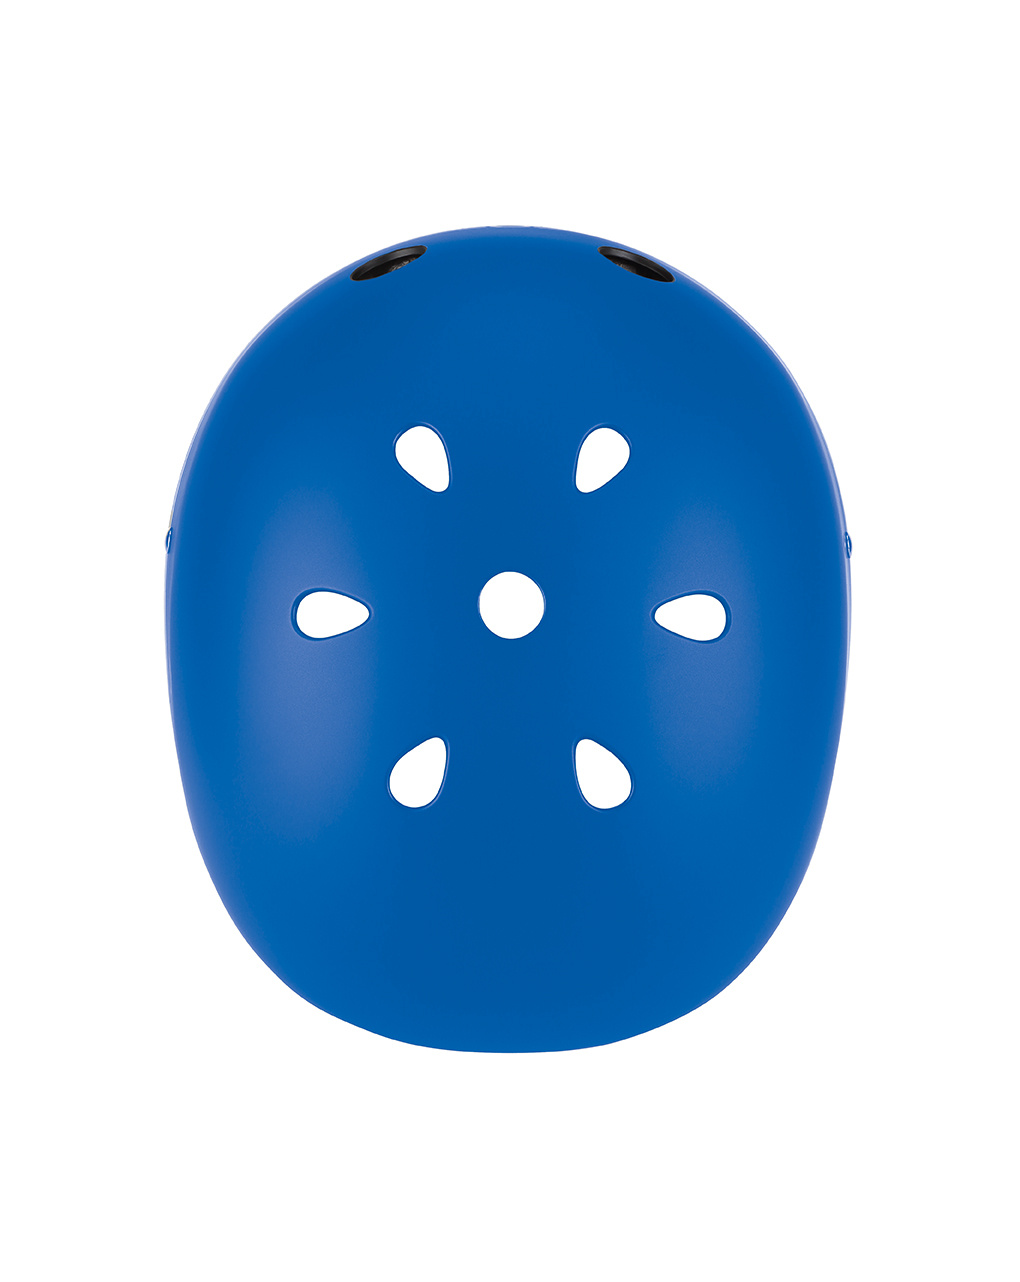 Caschetto helmet light xs/s (48-53 cm) - blu - globber - Globber